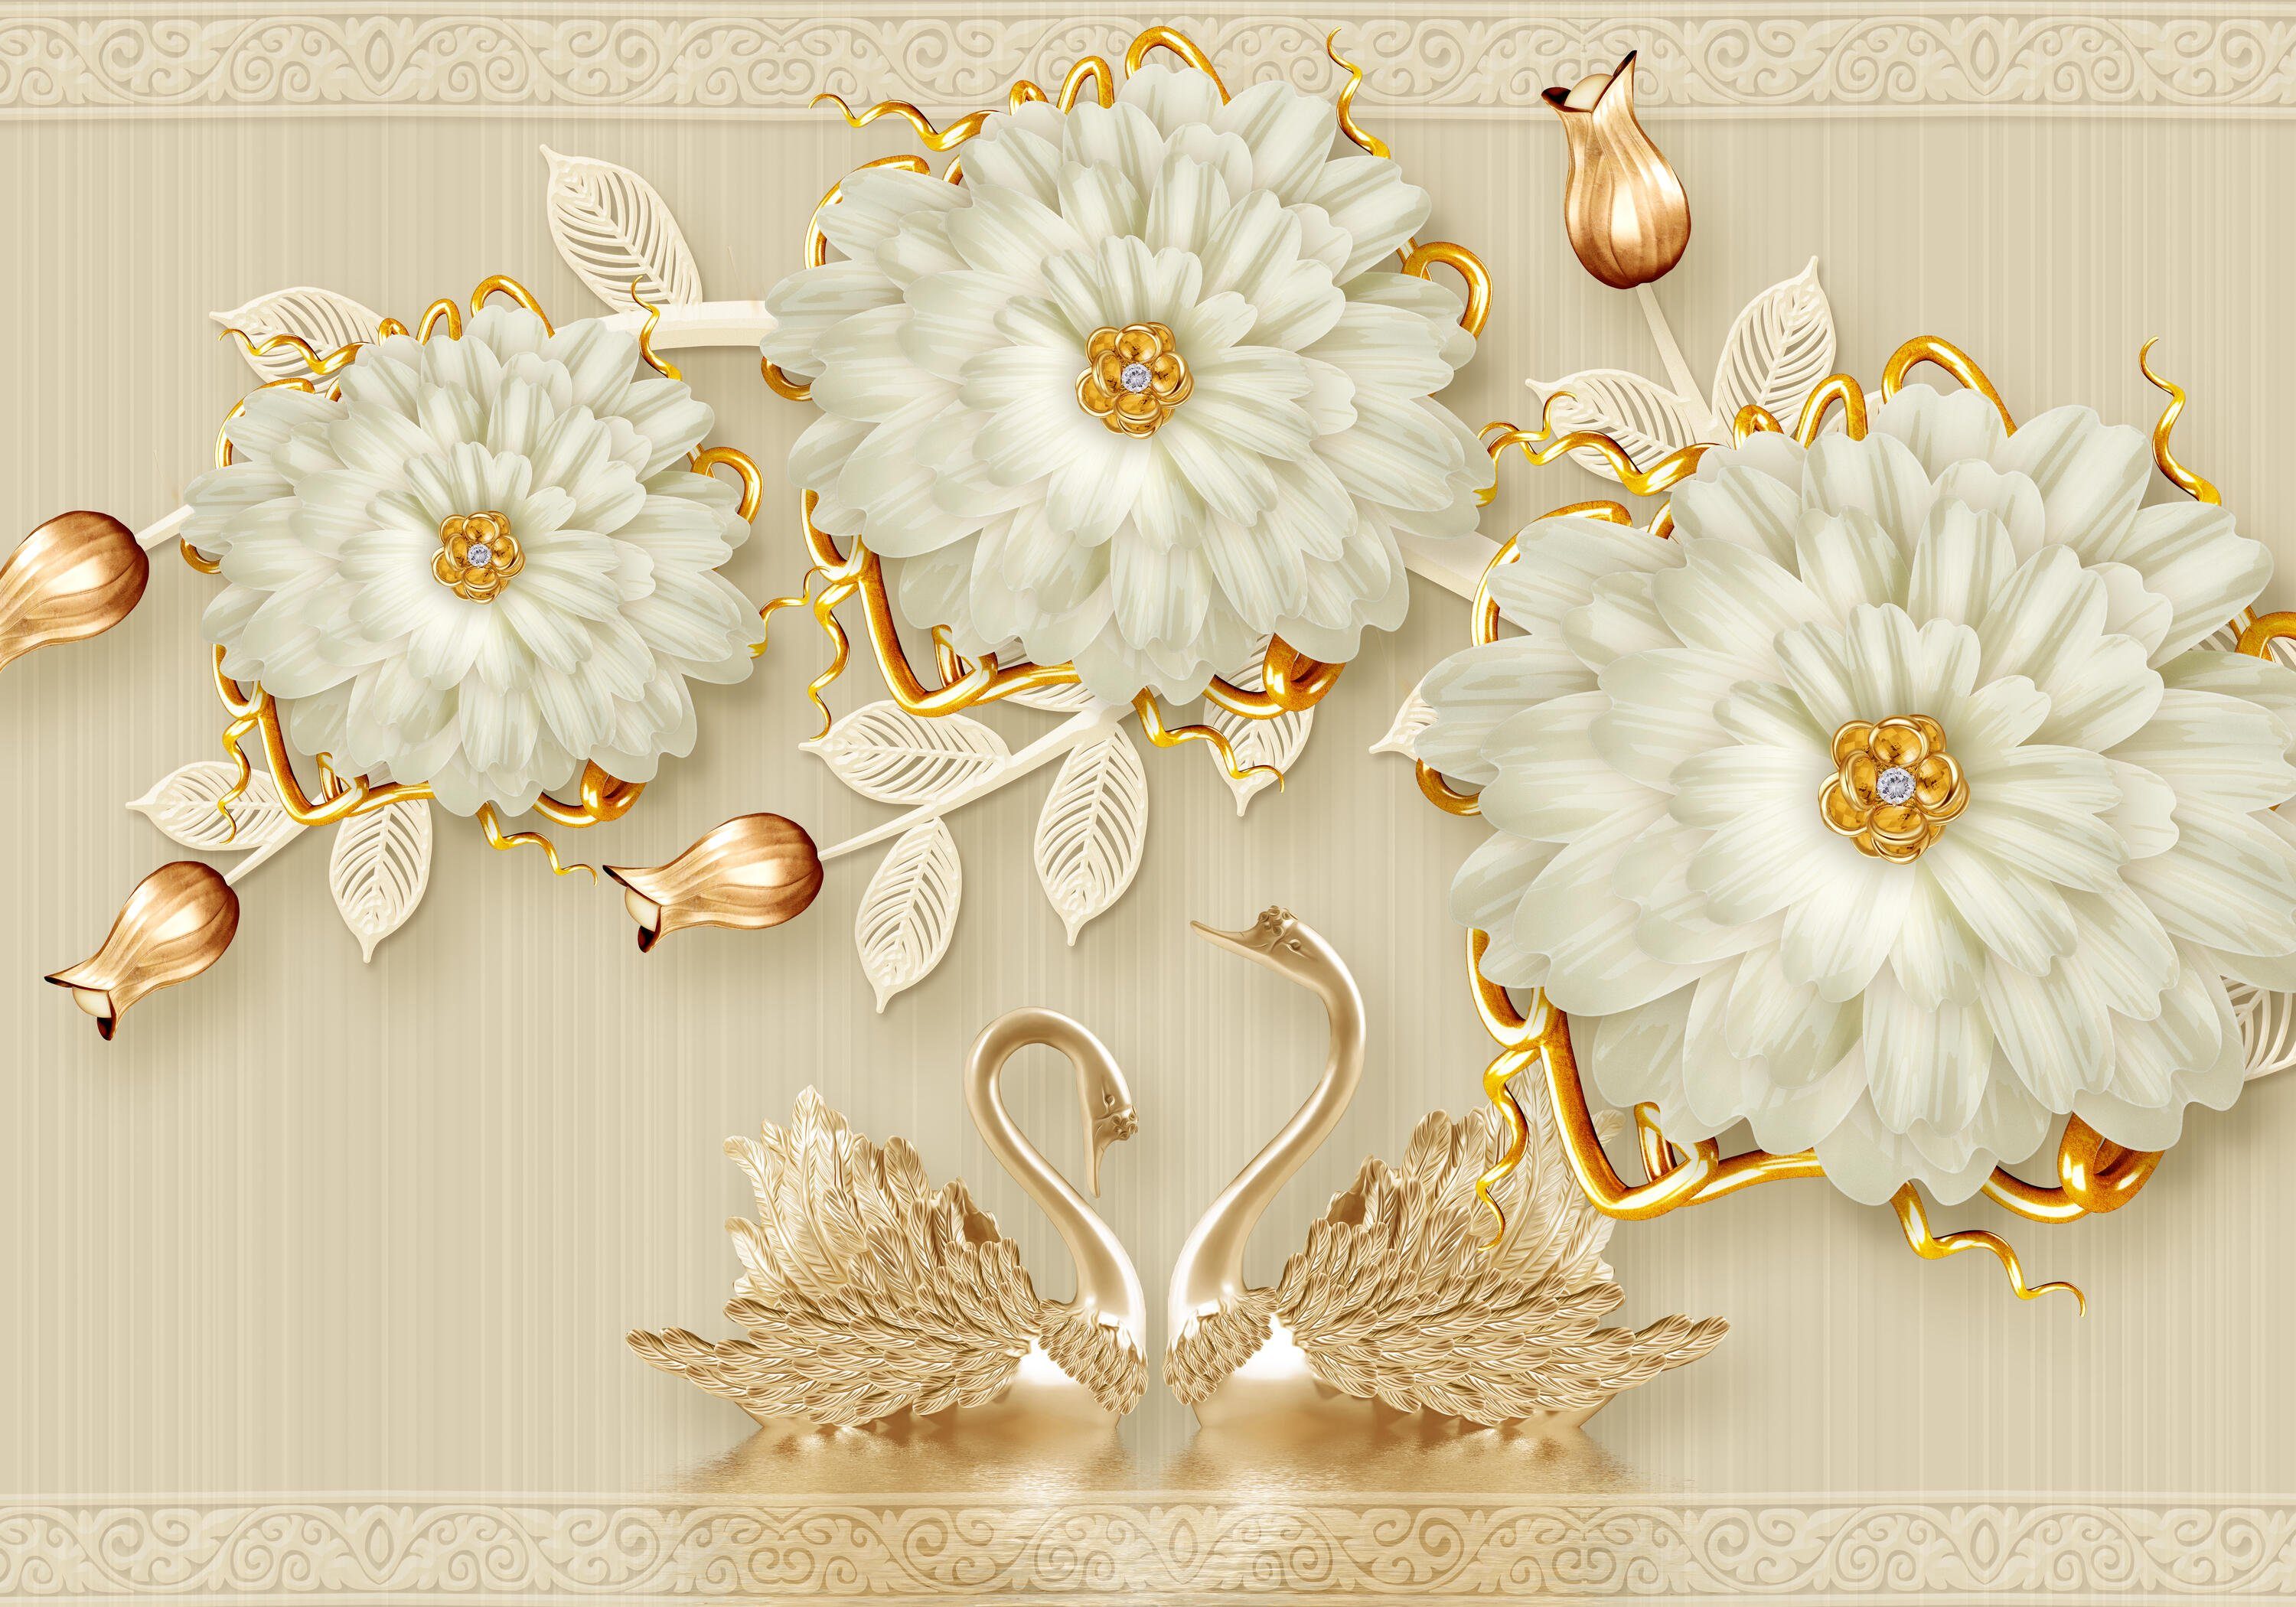 Fototapete gold Motivtapete, Vliestapete matt, glatt, Ornamente weiß, Wandtapete, wandmotiv24 Blüten